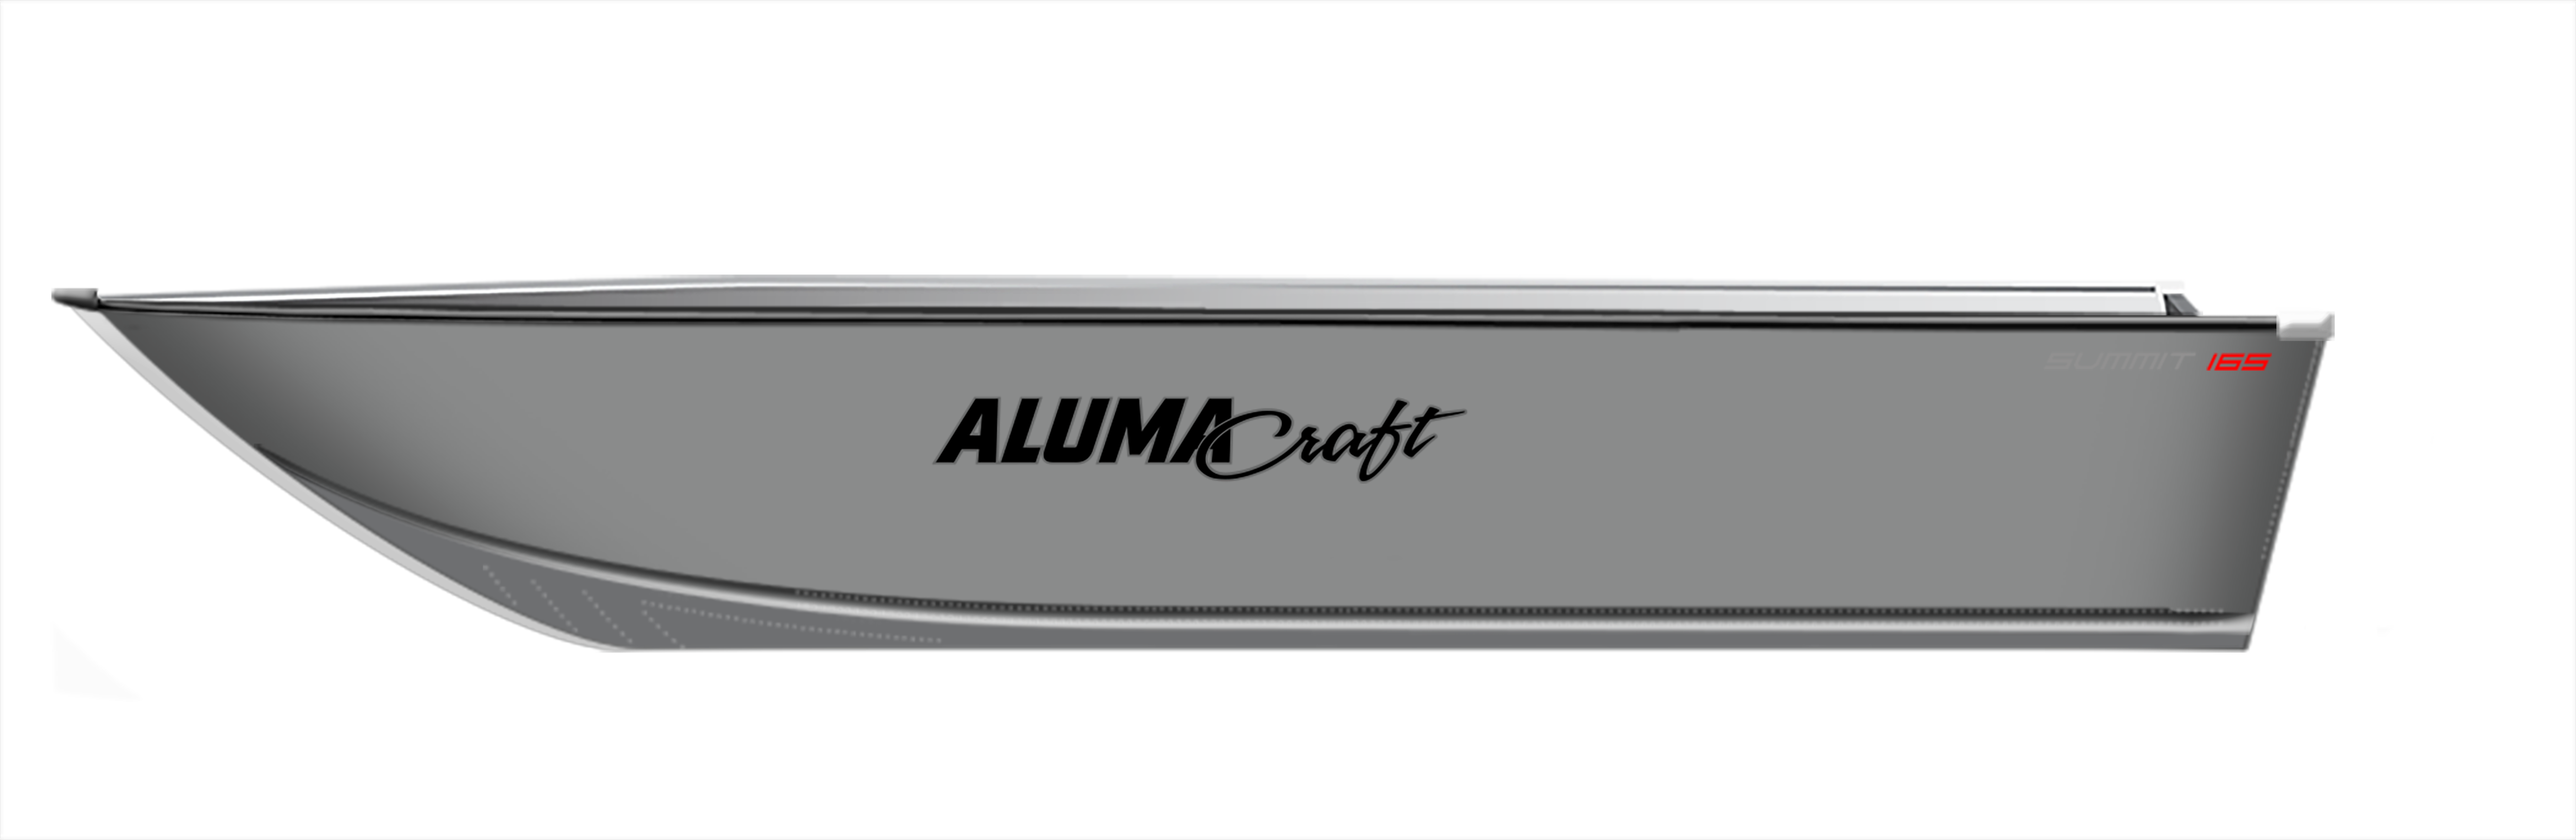 Multispecies Summit165 Silver Boat on 2D Side Profile